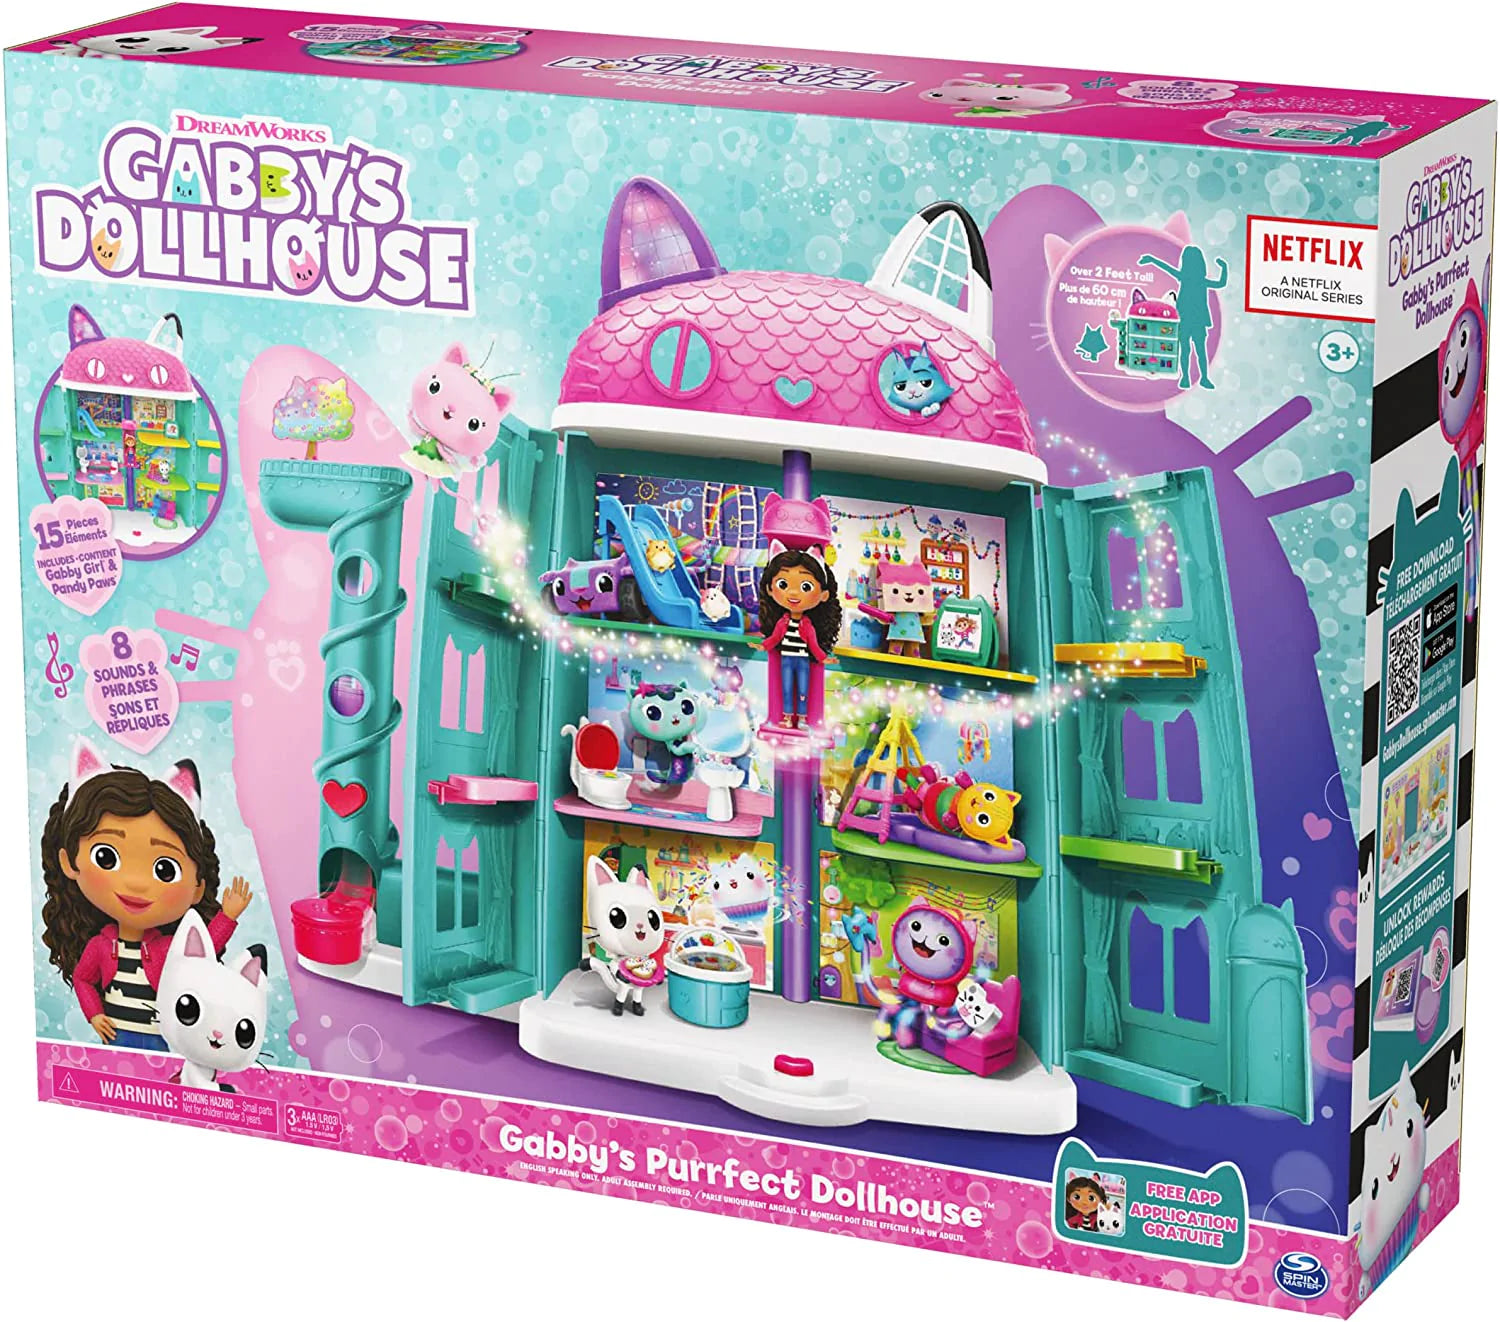 Gabby's Dollhouse Gabby's Purrfect Dollhouse